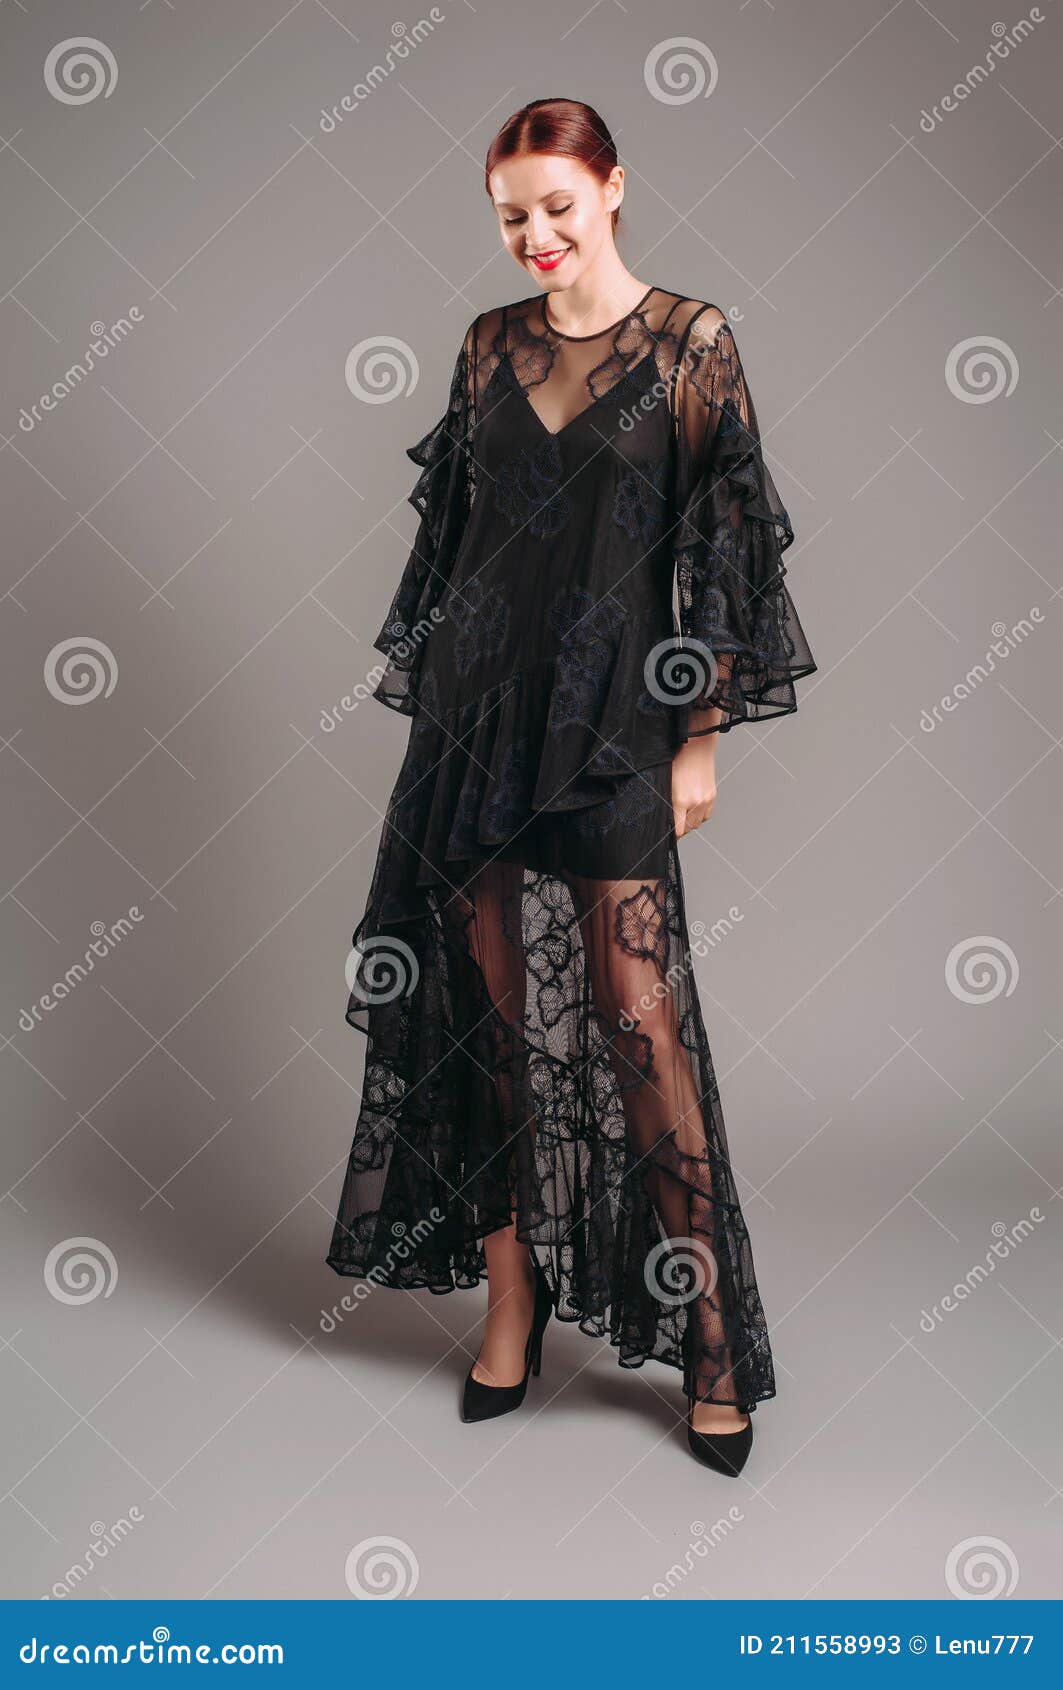 Vestido Transparente De Noche Con Mangas De Murciélago. Hermoso Modelo Confianza Usando Tacones Altos Moderno Apariencia Imagen archivo - de palo, maquillaje: 211558993